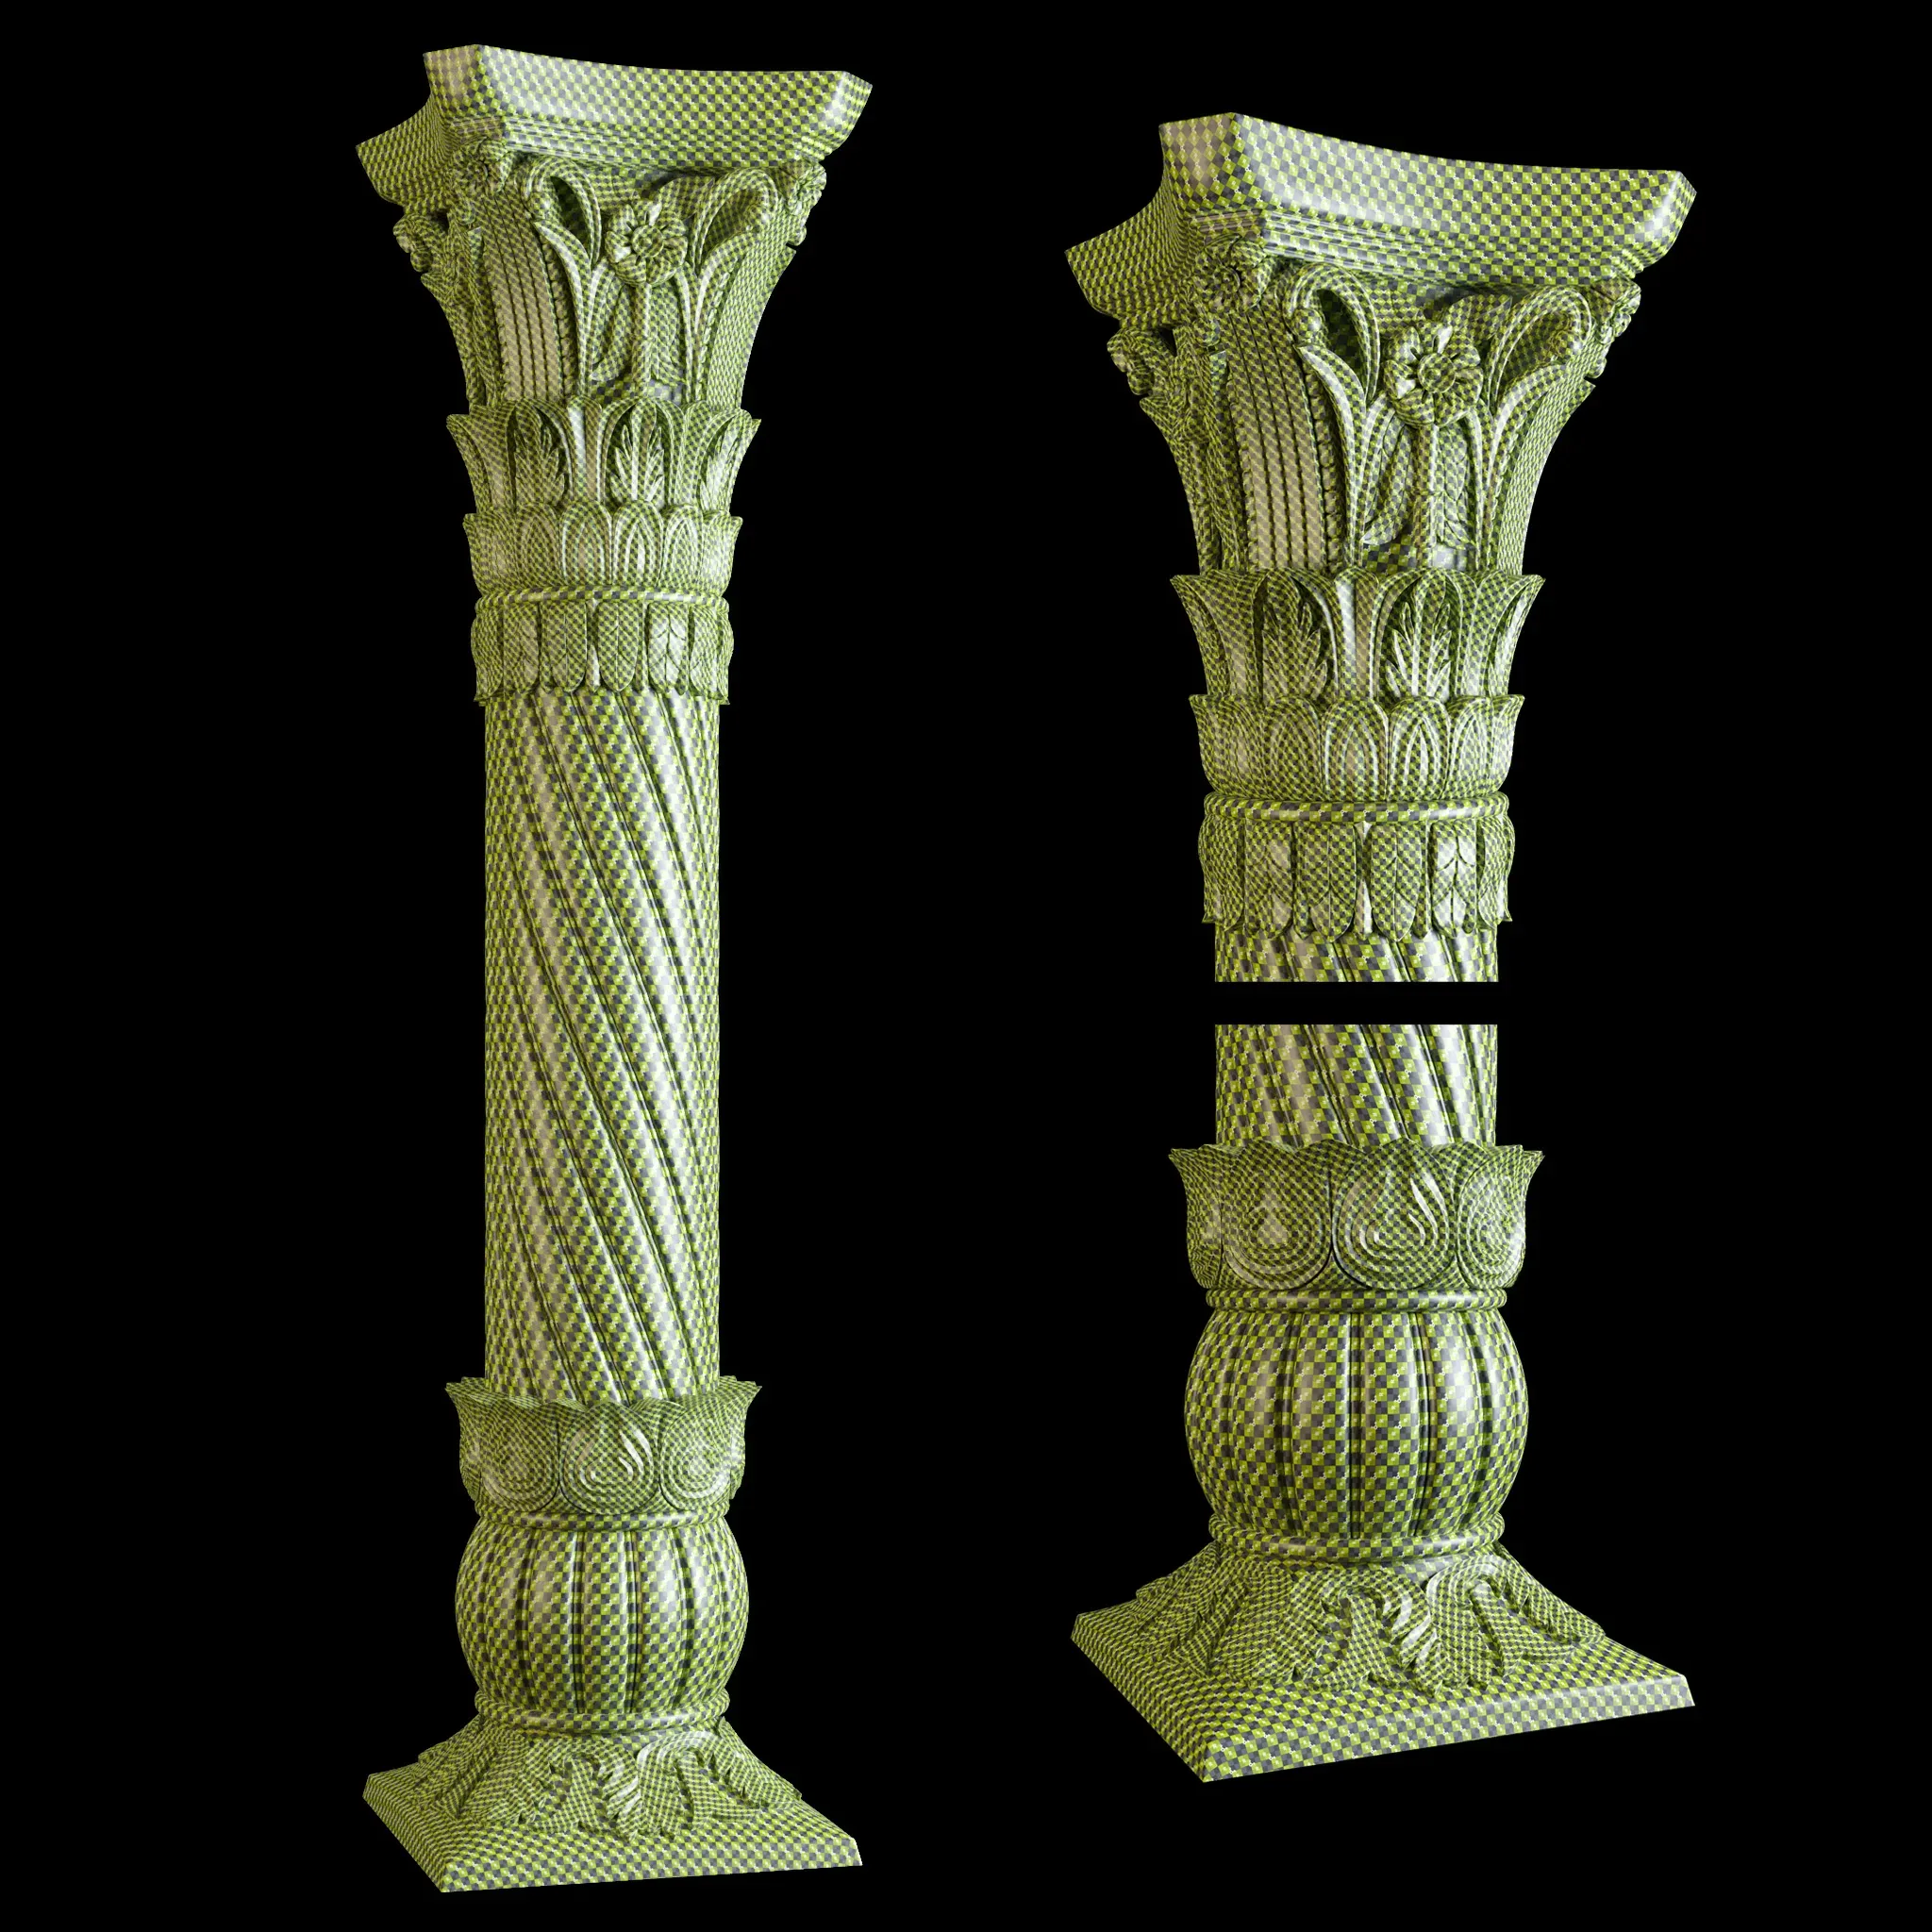 East carved column